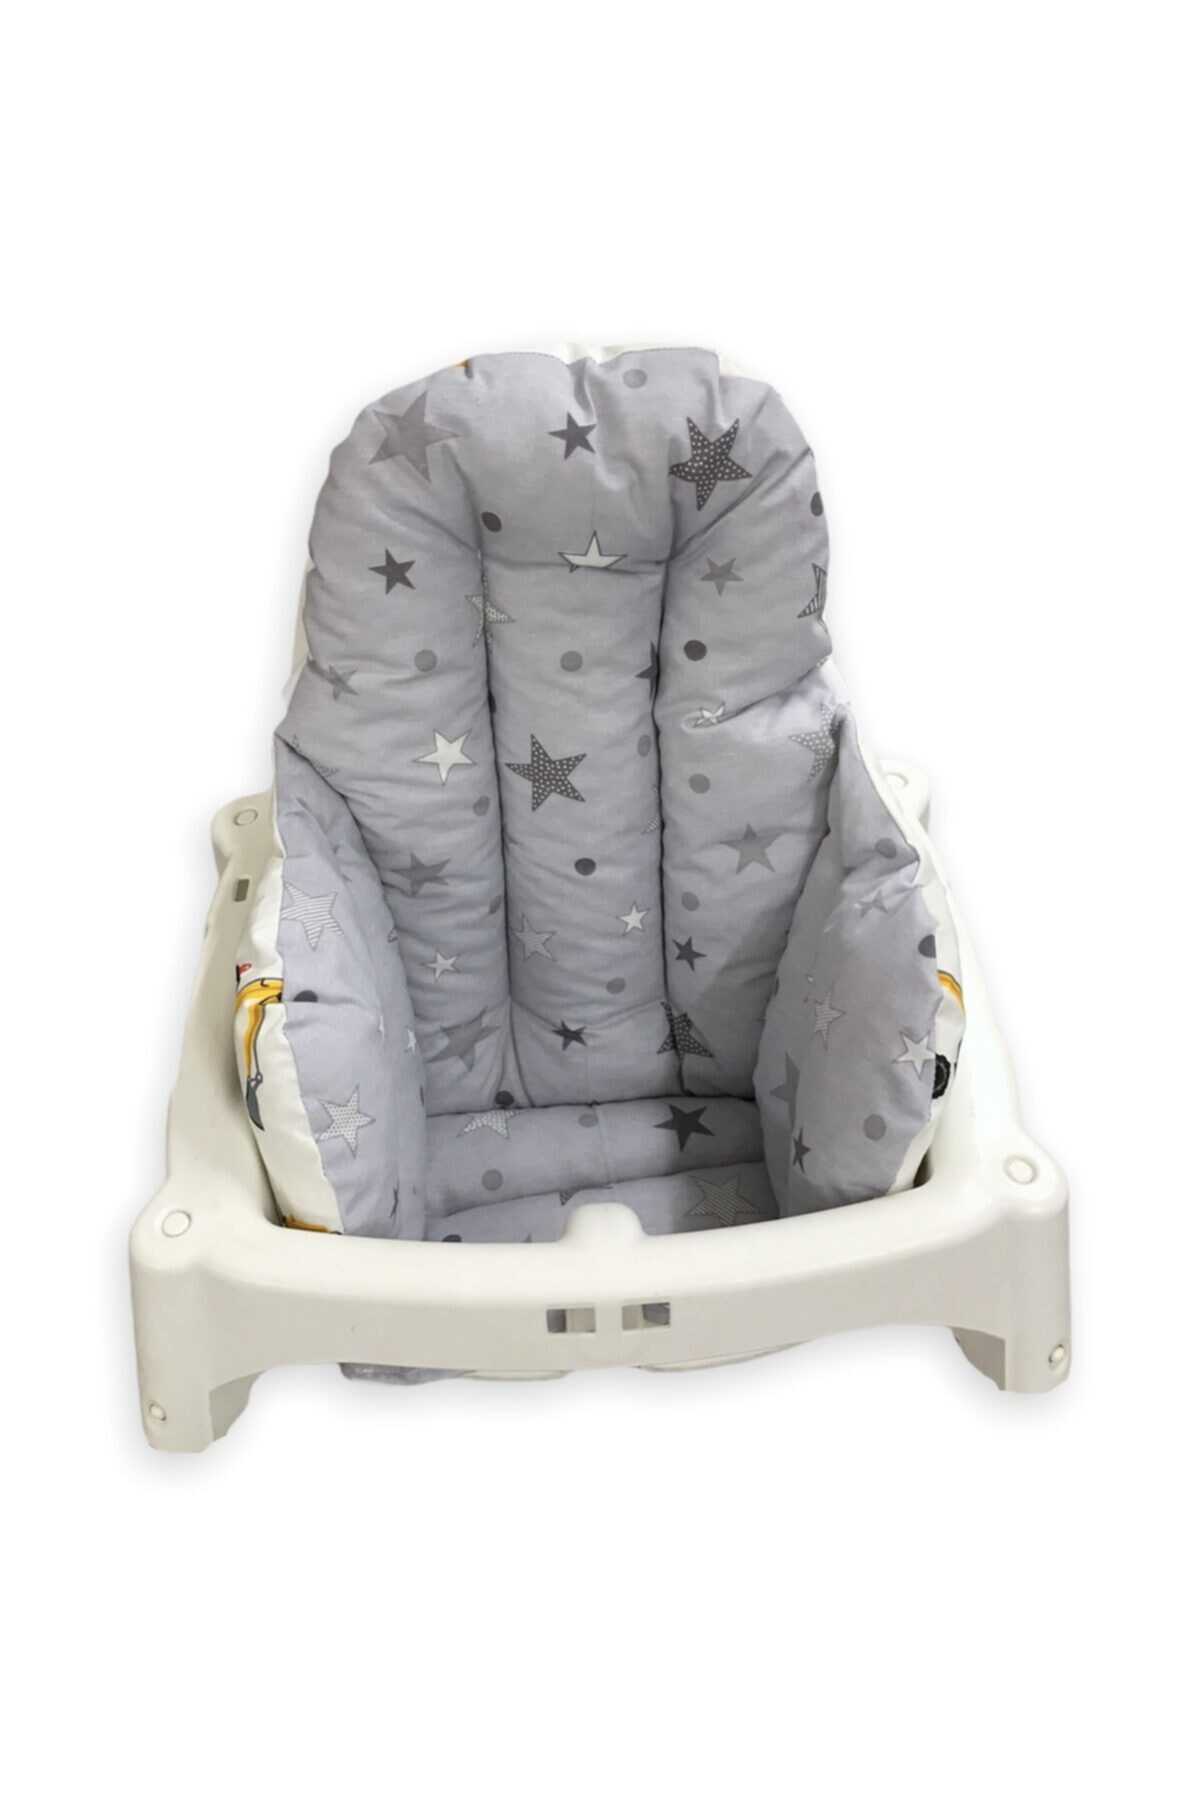 کوسن صندلی کودک دو رو طرح دار سفید طوسی برند Bebek Özel 